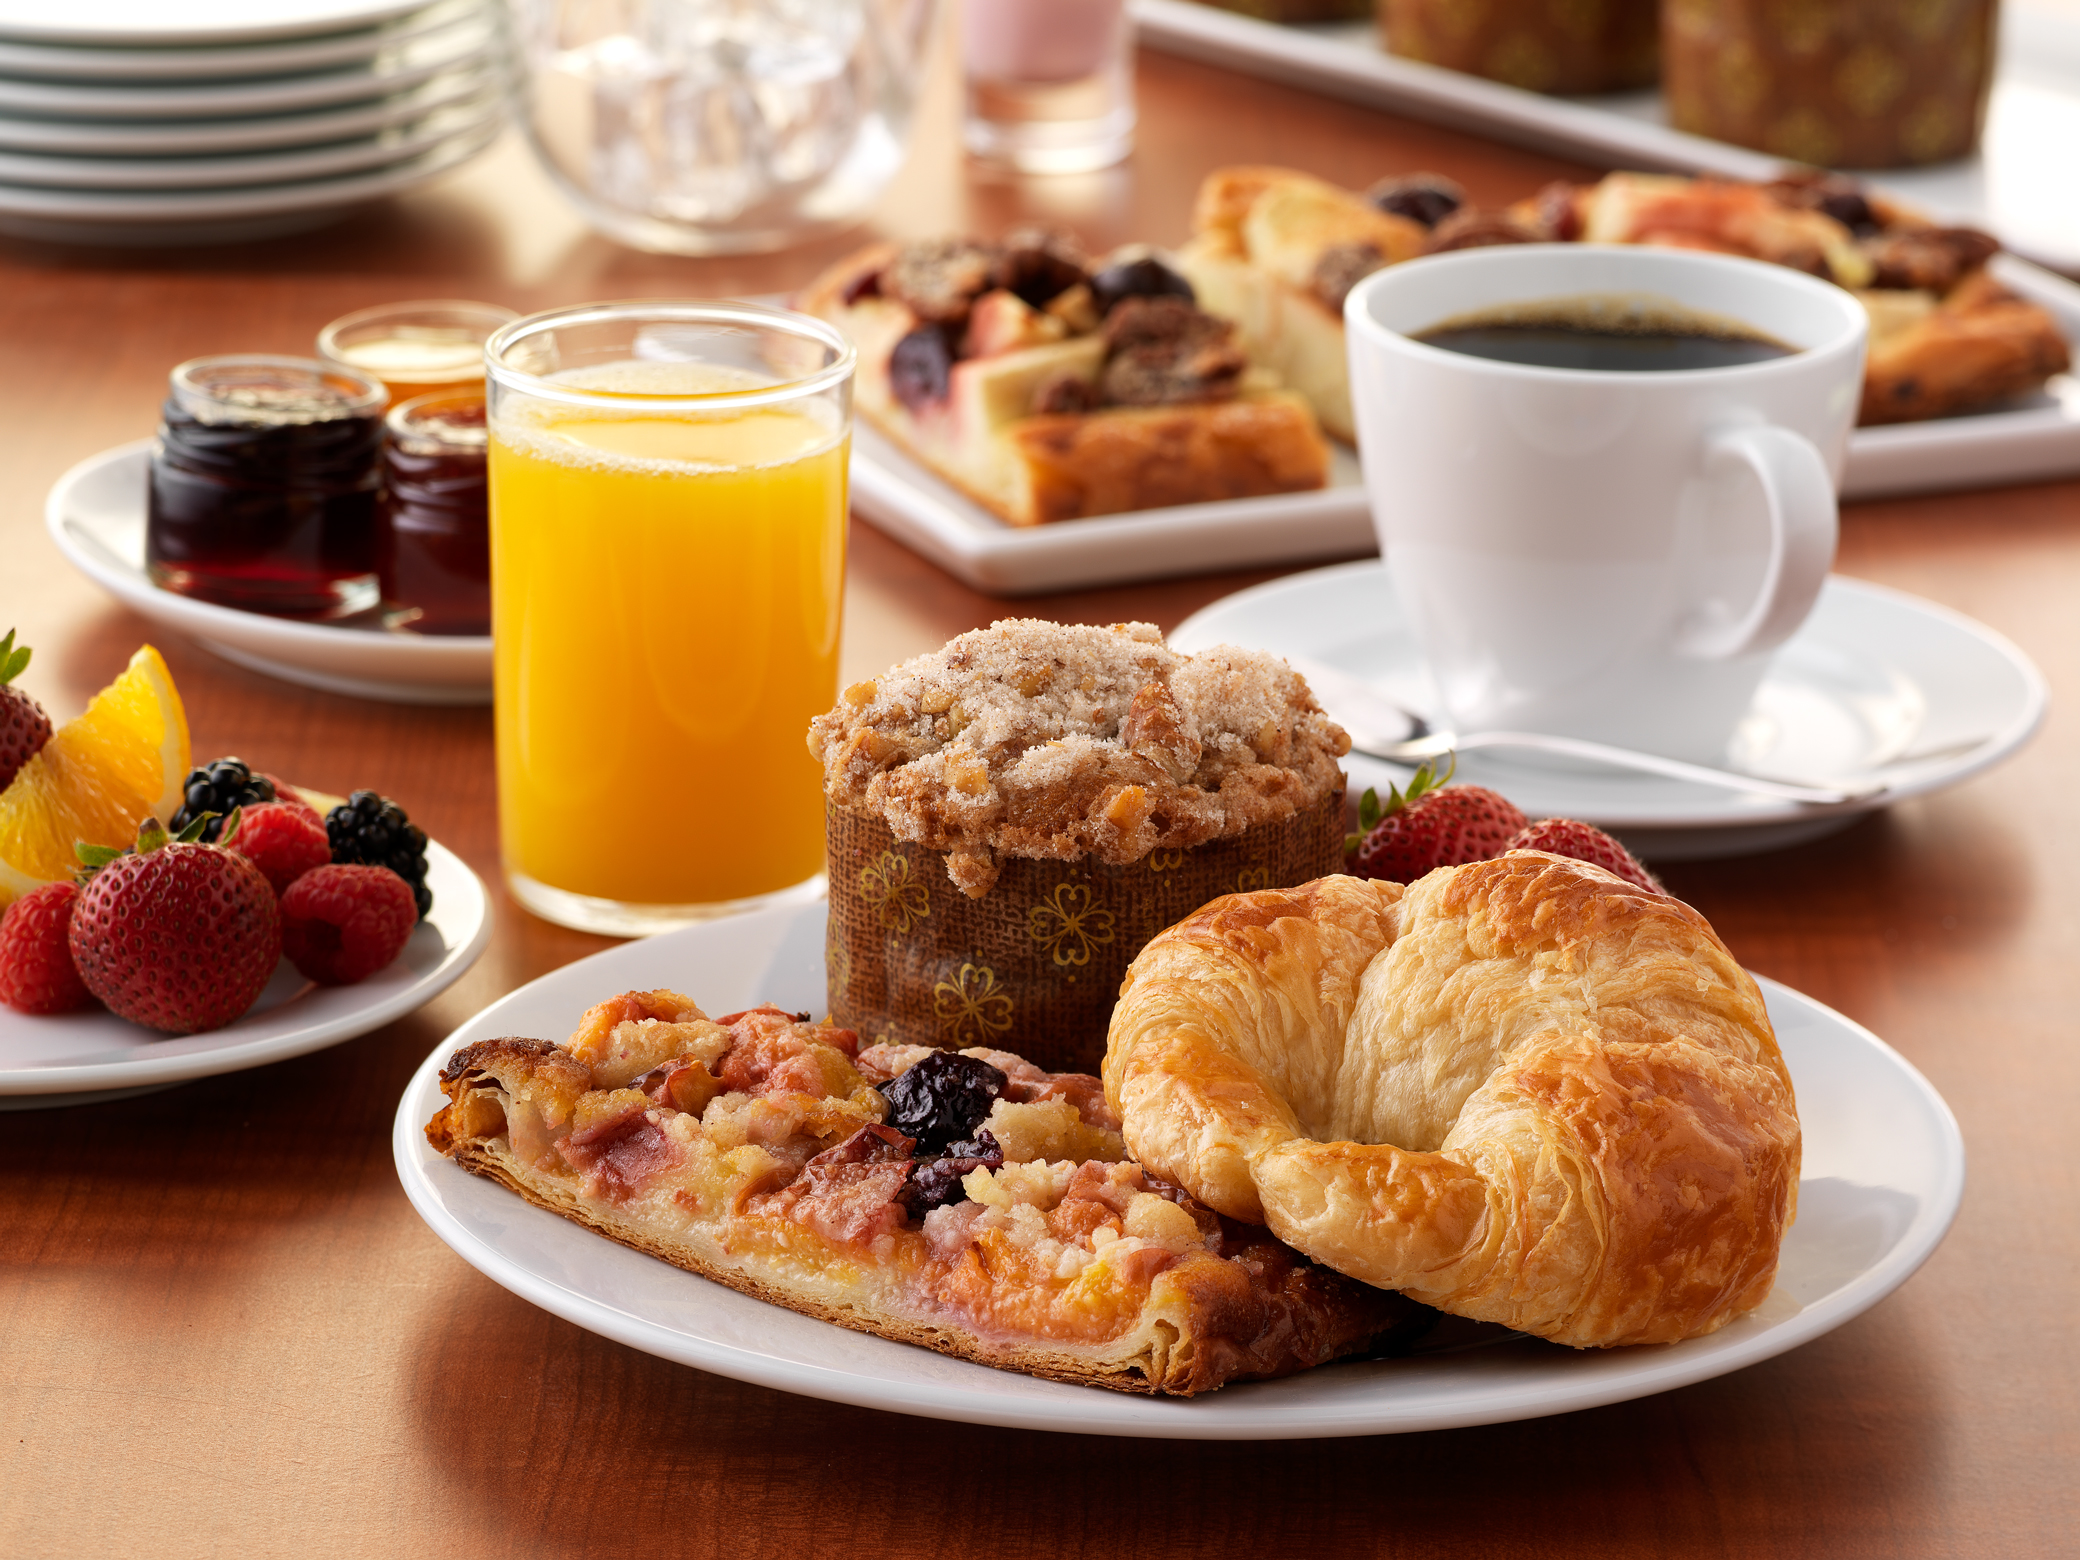 mesa com refeições matinais como pães, torradas, um copo com suco, uma xícara com café representando o café da manhã pelo mundo